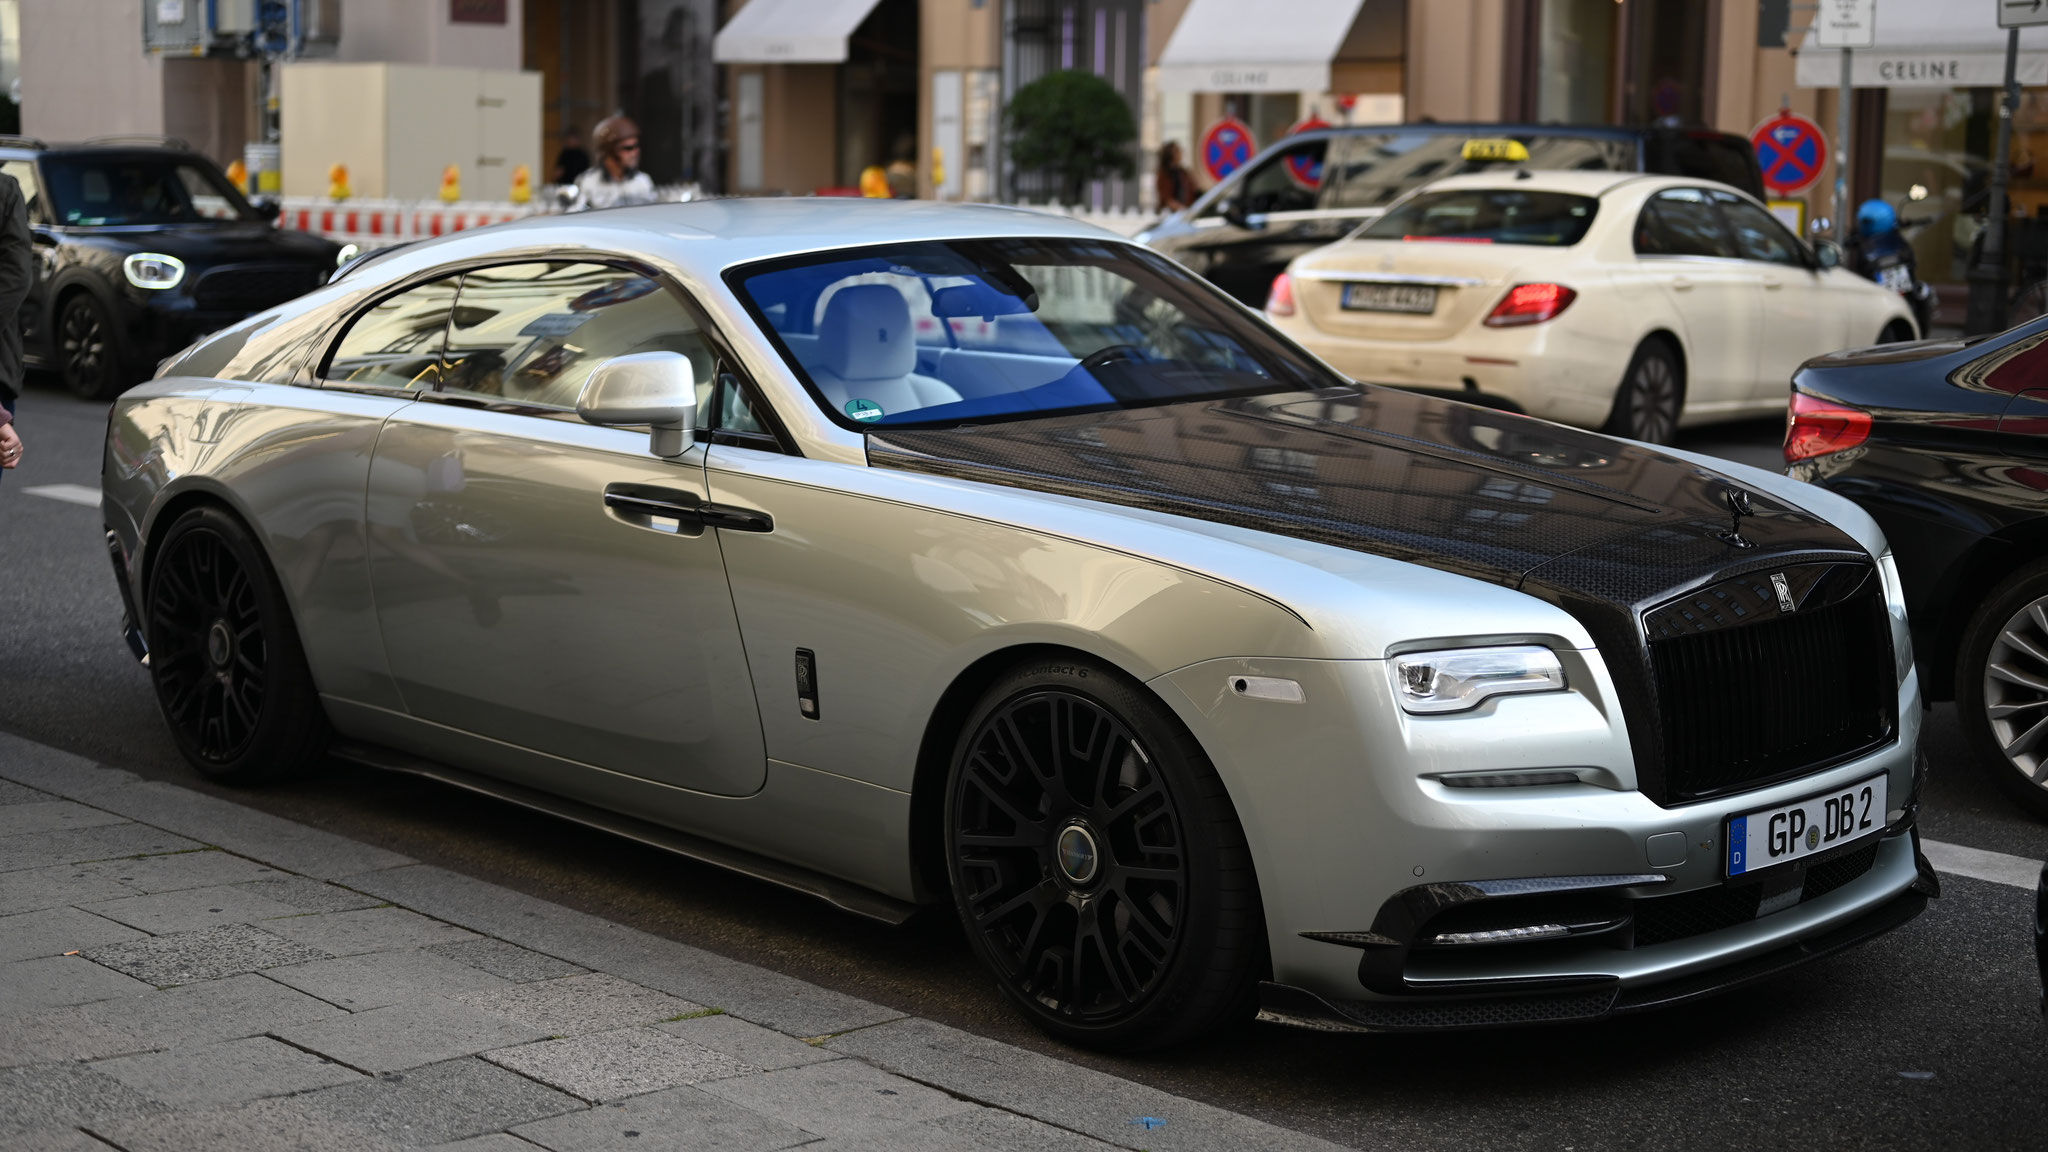 Rolls Royce Wraith Mansory - GP-DB2